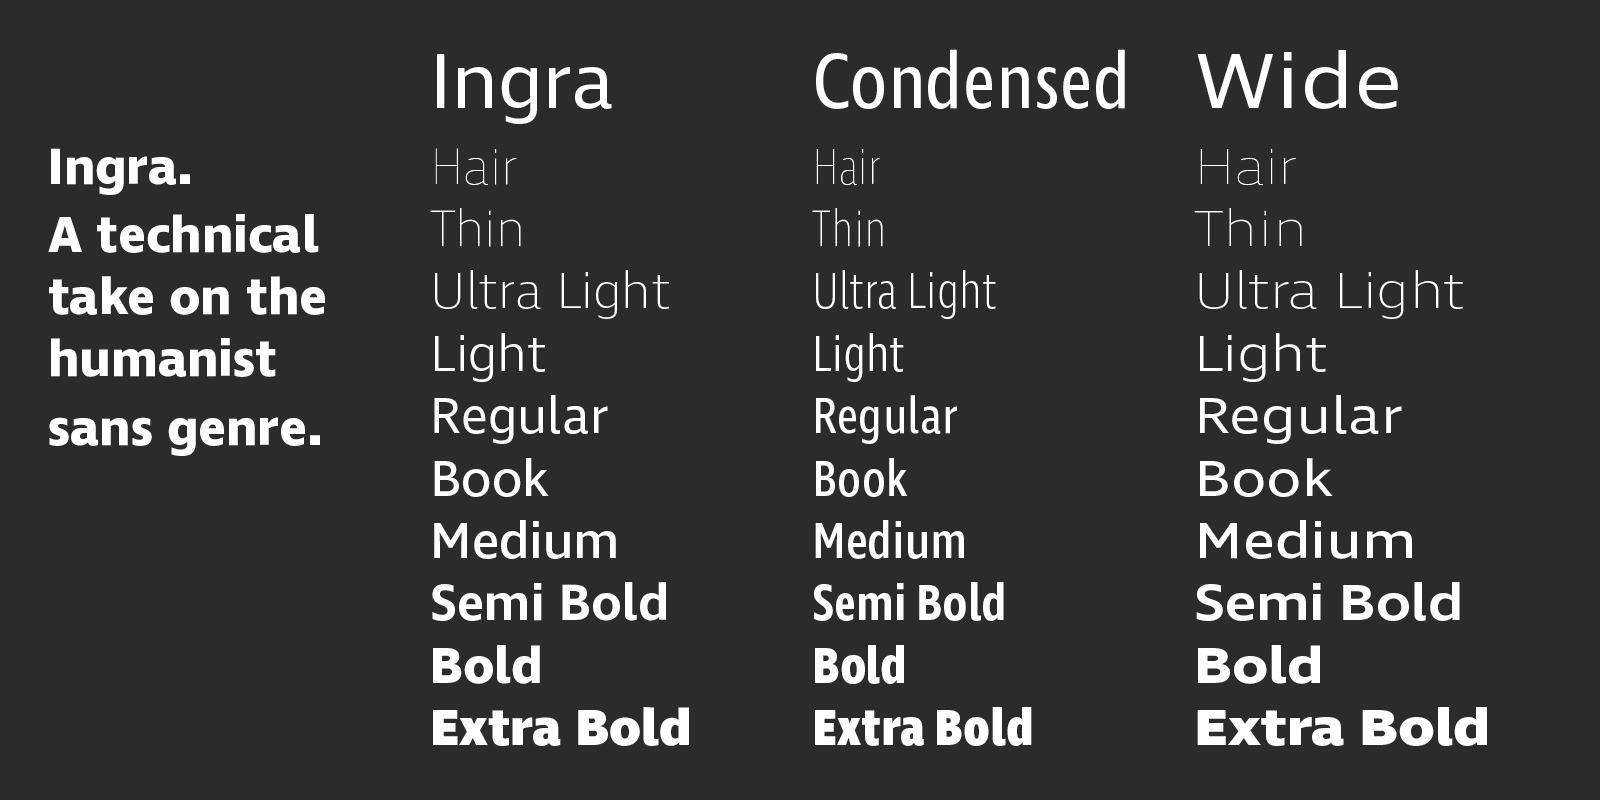 Card displaying Ingra typeface in various styles